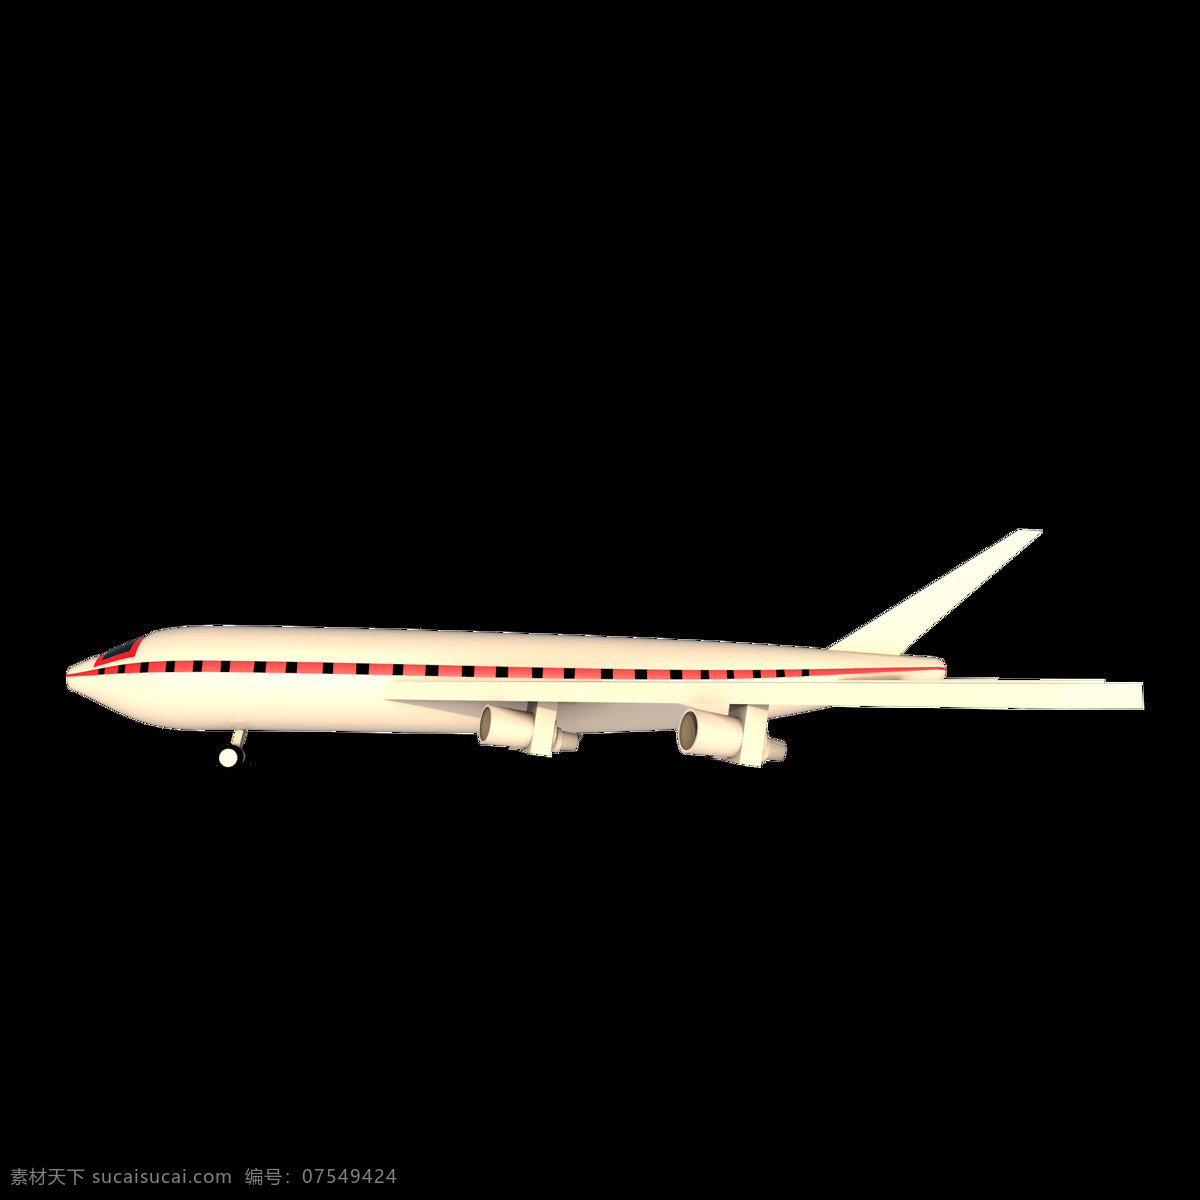 c4d 白色 飞机模型 海报 广告 图 装饰 元素 白色飞机 广告图 装饰元素